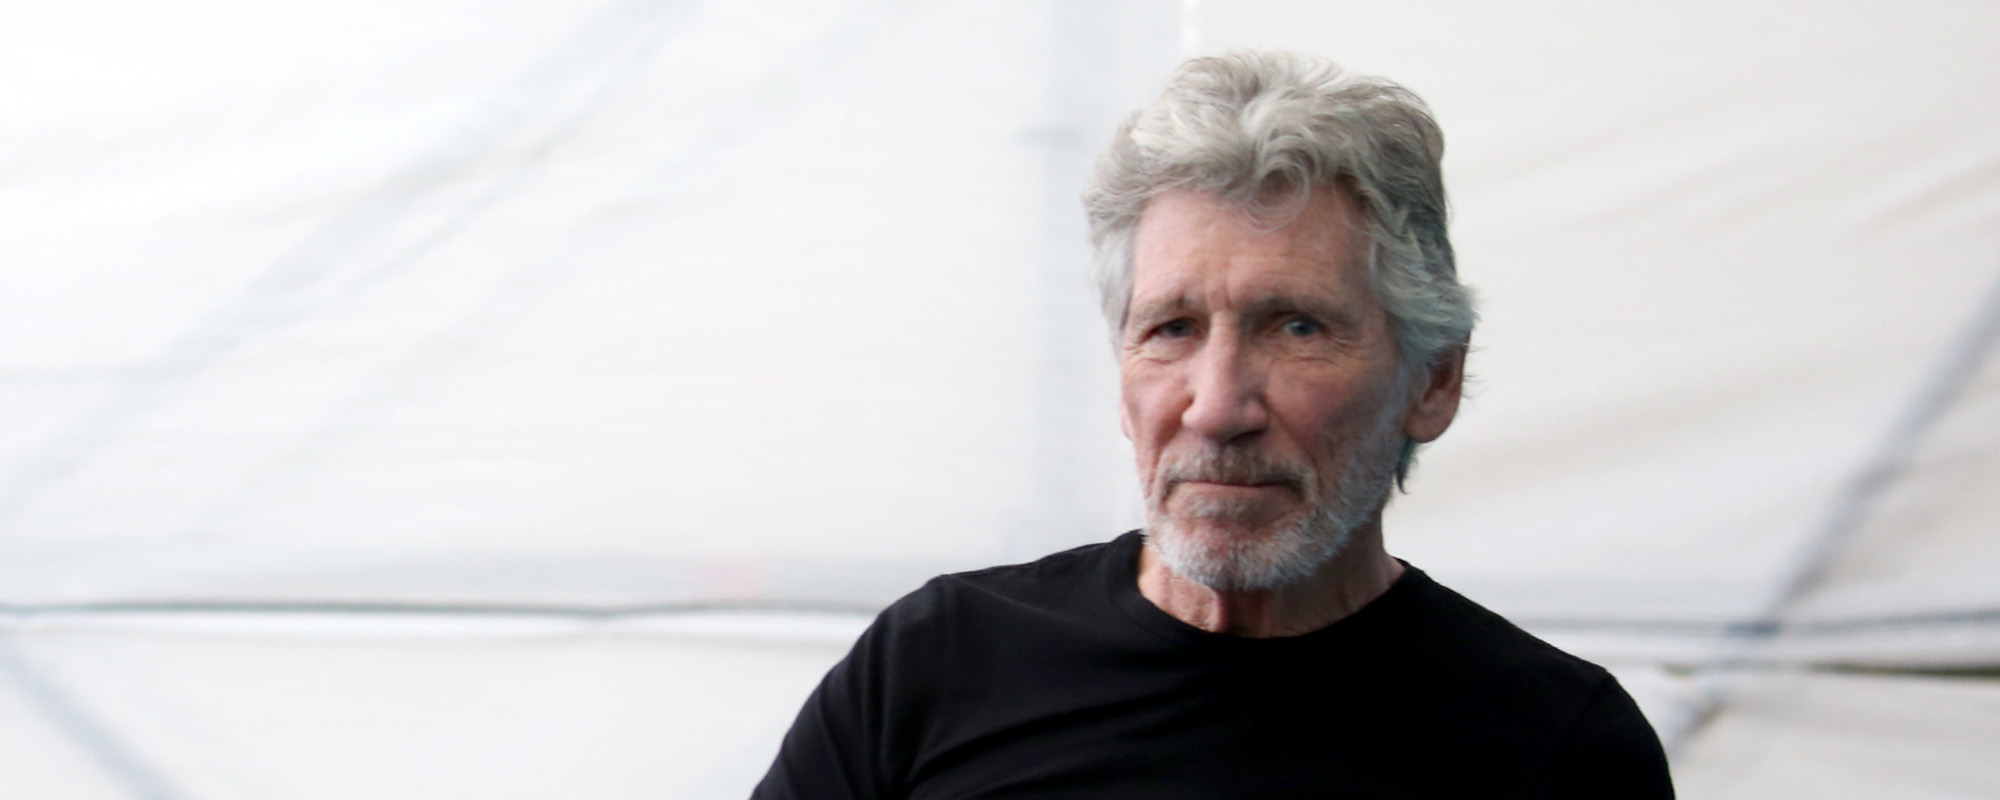 Le concert de Roger Waters en Allemagne aurait été annulé pour antisémitisme